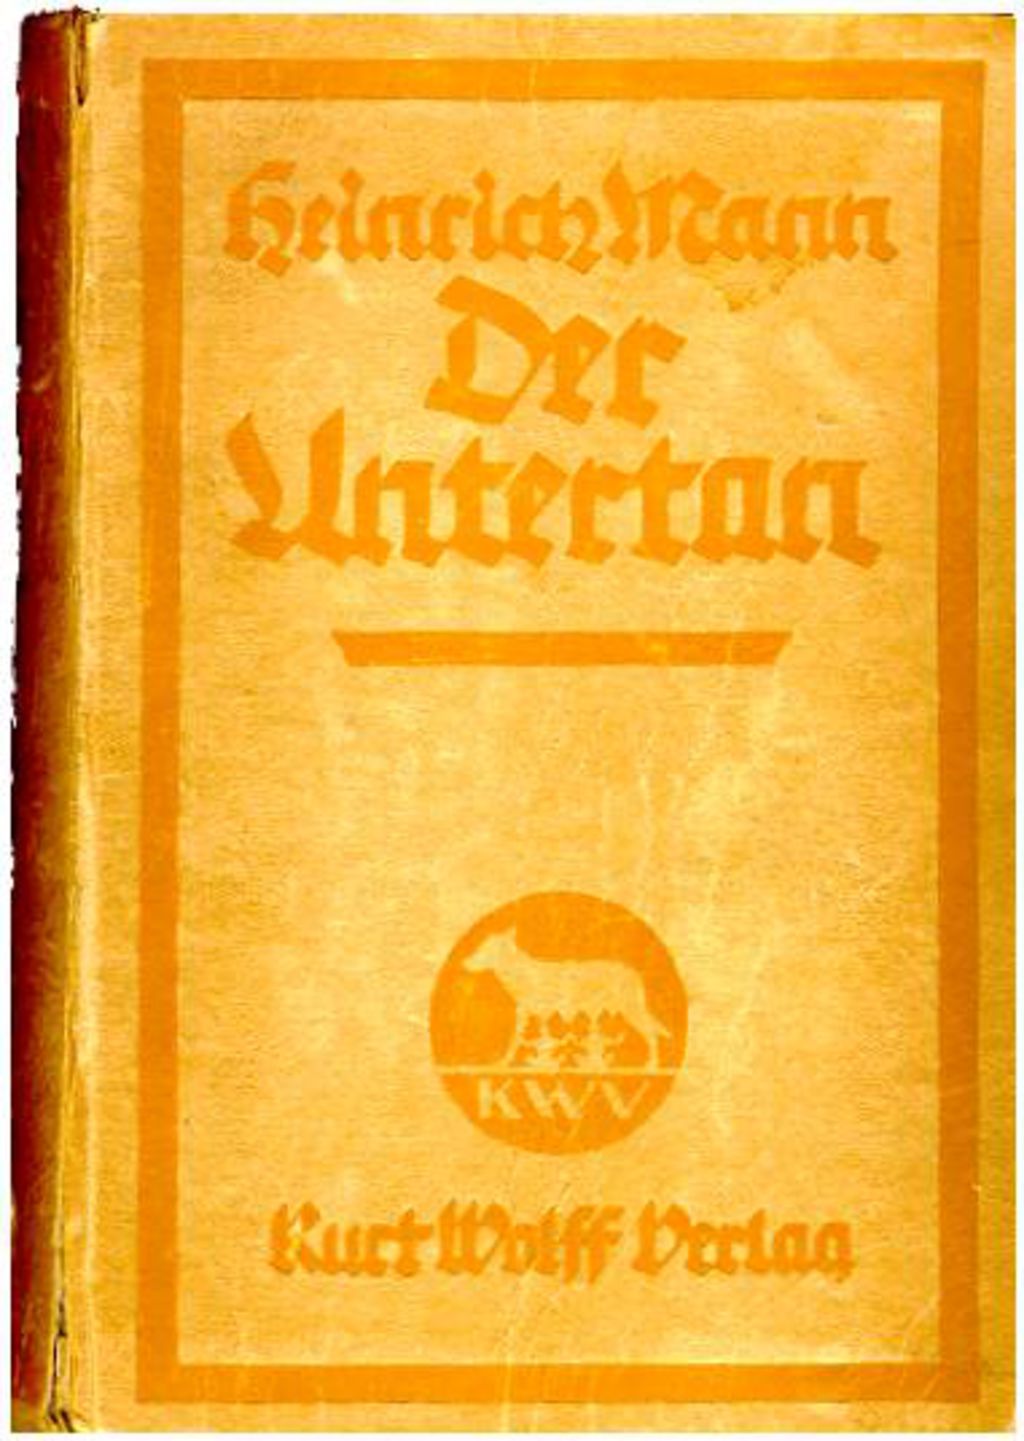 Heinrich Mann, "Der Untertan", 1918